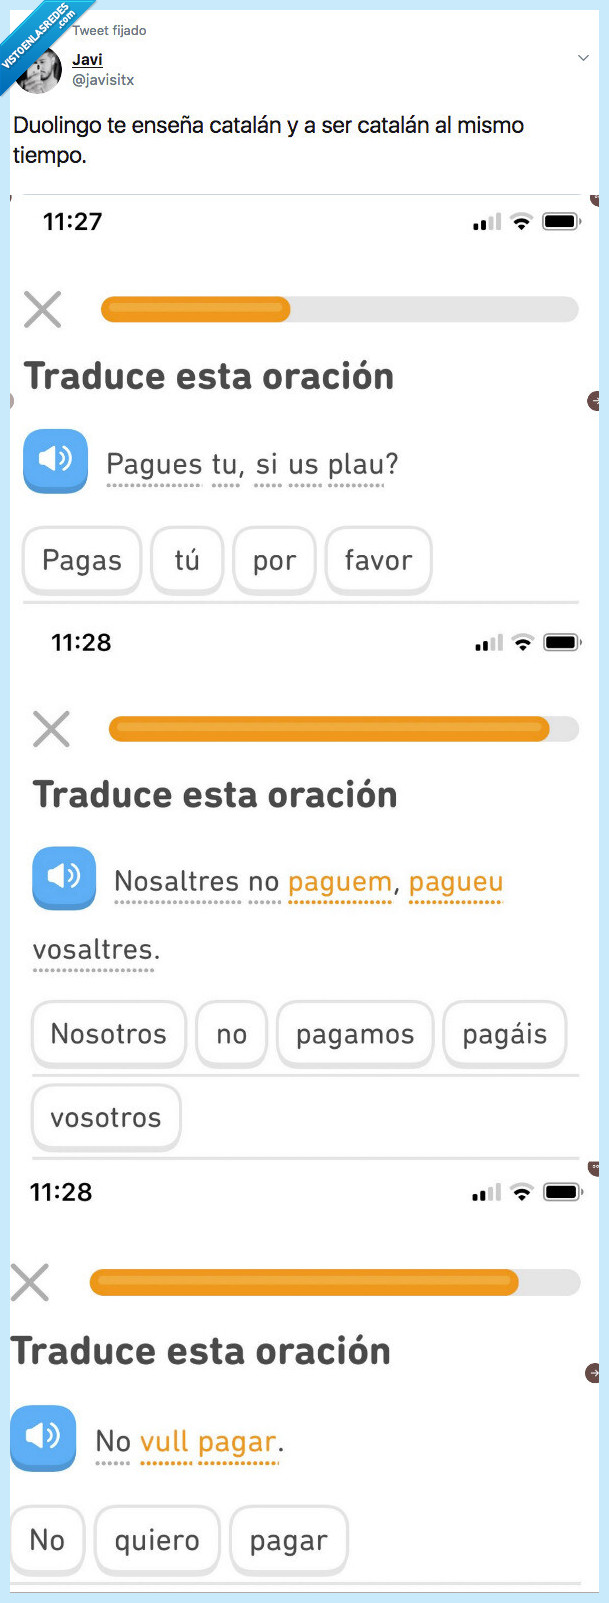 522036 - Duolingo te hace una inmersión lingüitica completa al catalán, por @javisitx